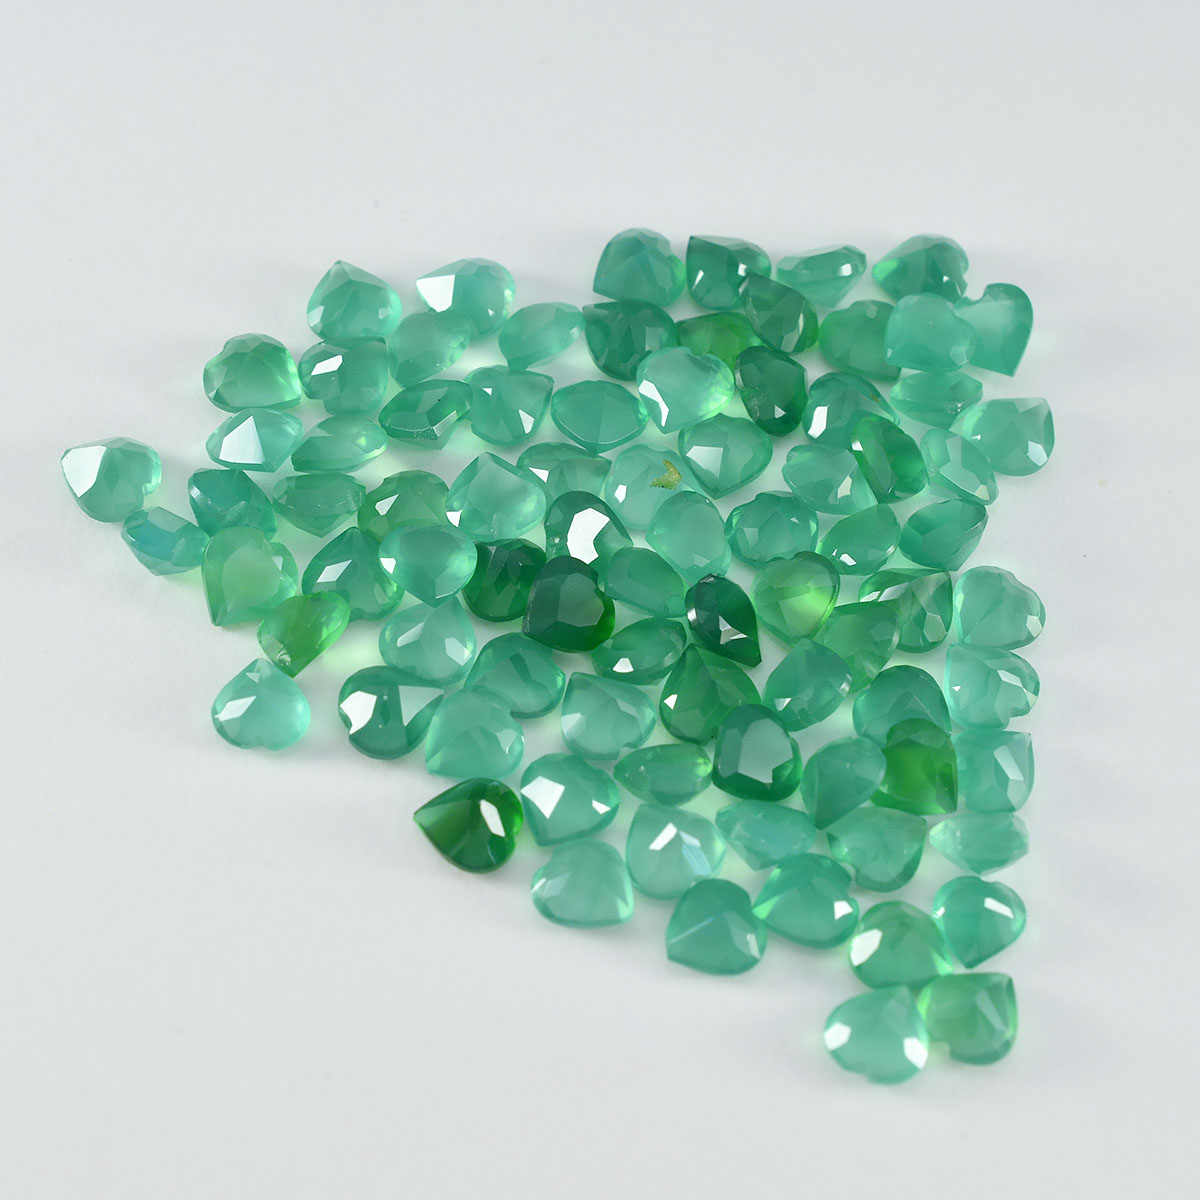 Riyogems 1 pieza de ónix verde Natural facetado 6X6mm forma de corazón gema de buena calidad